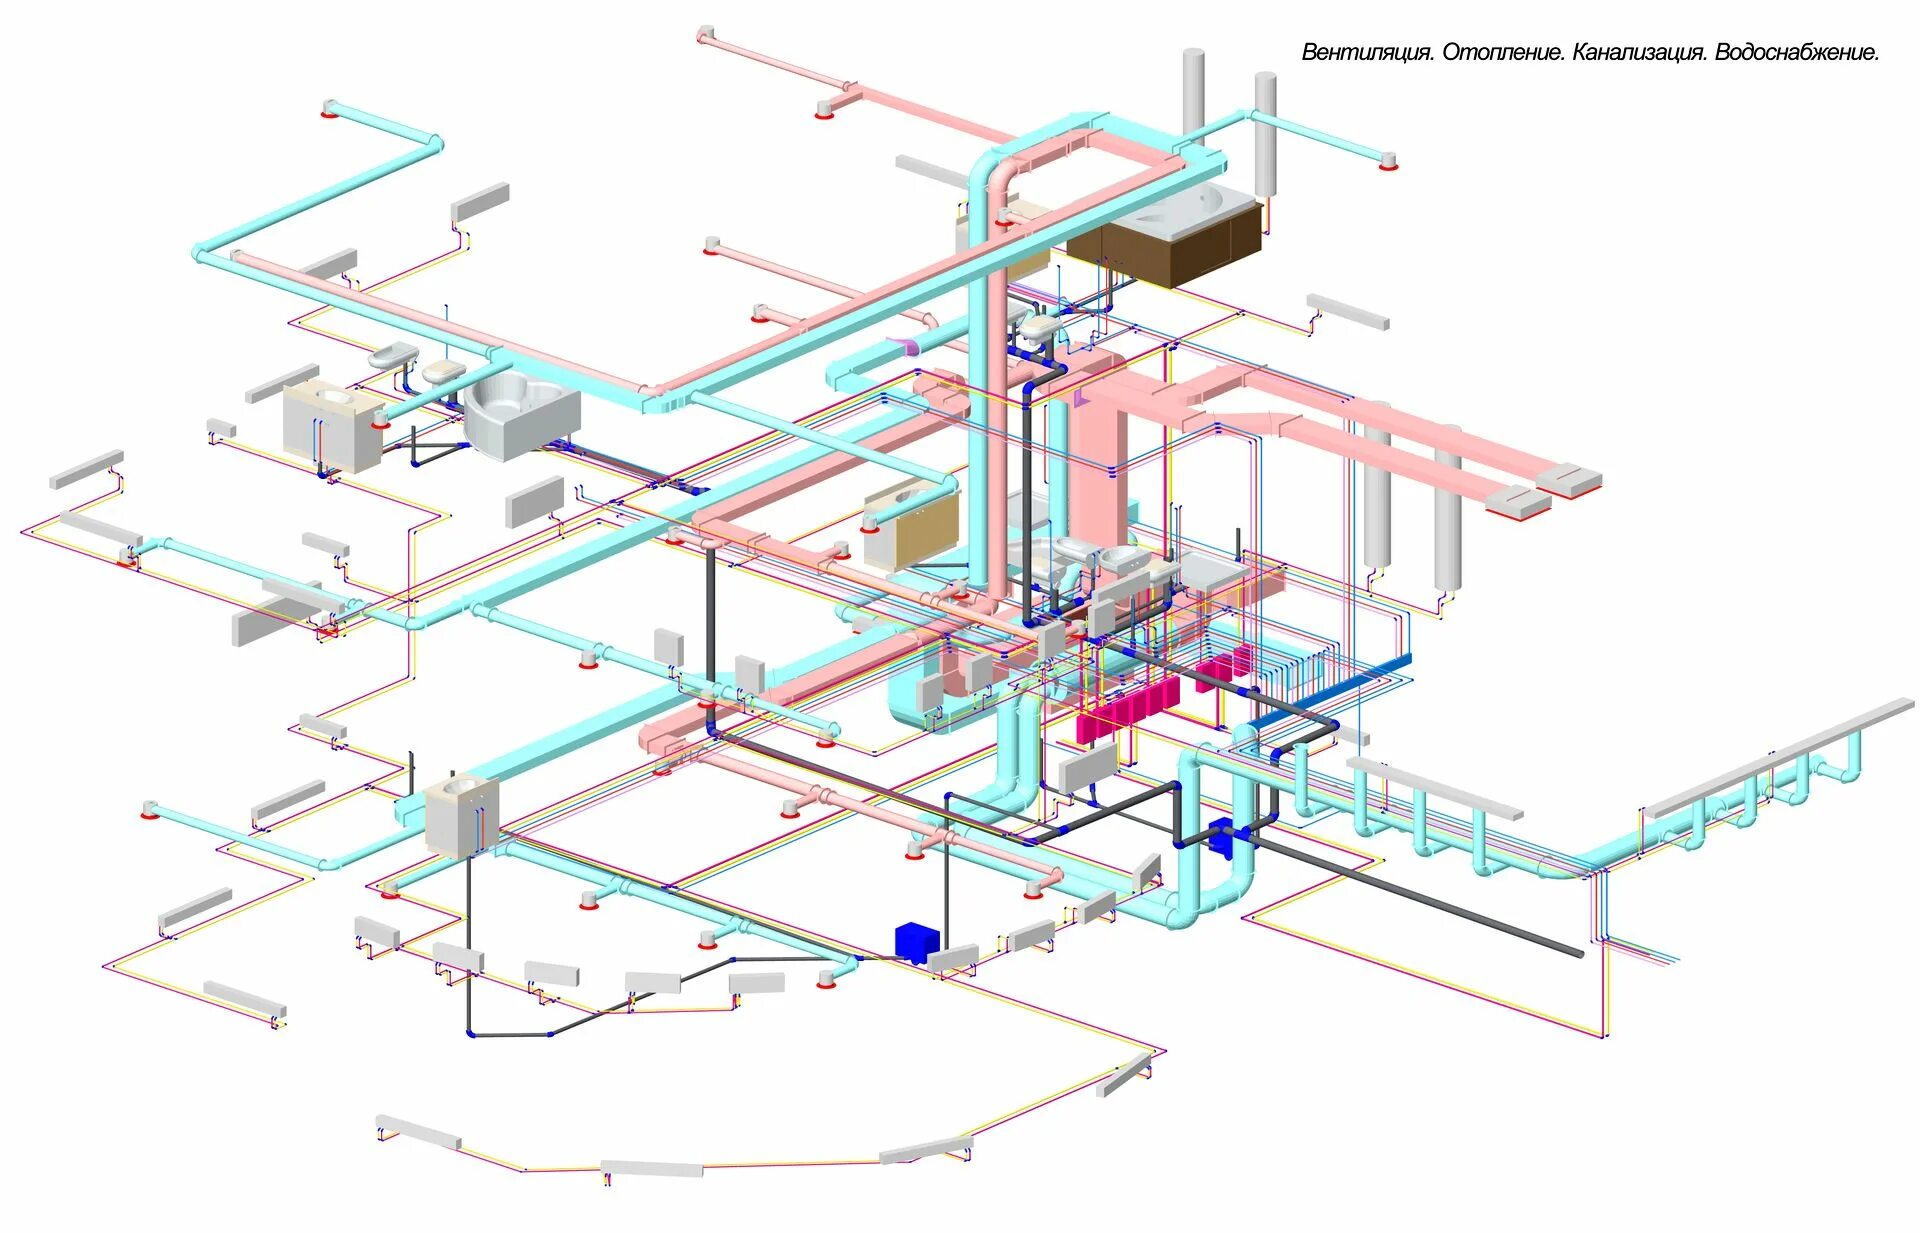 Отопительная вентиляция. Схема теплоснабжения приточных установок. Проектирование систем вентиляция и отопления. Схема инженерных коммуникаций здания. Внутренние инженерные сети схема.